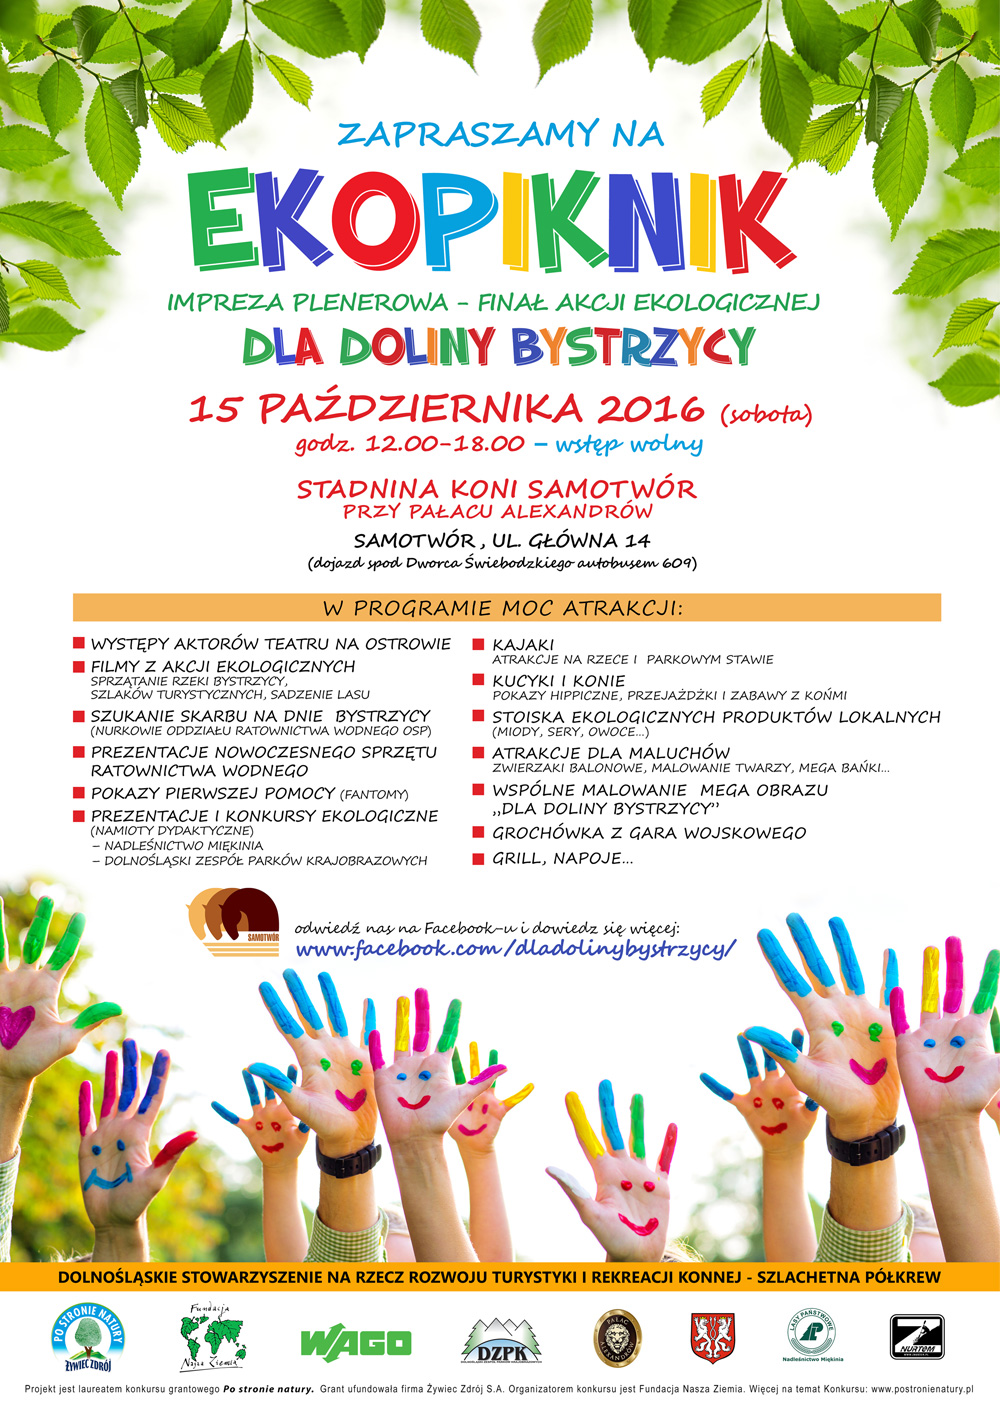 plakat przedstawia informacje dotyczące akcji finałowej - EKOPIKNIKU w Samotworze organizowanego 15 października 2016r., w godz. 12-18